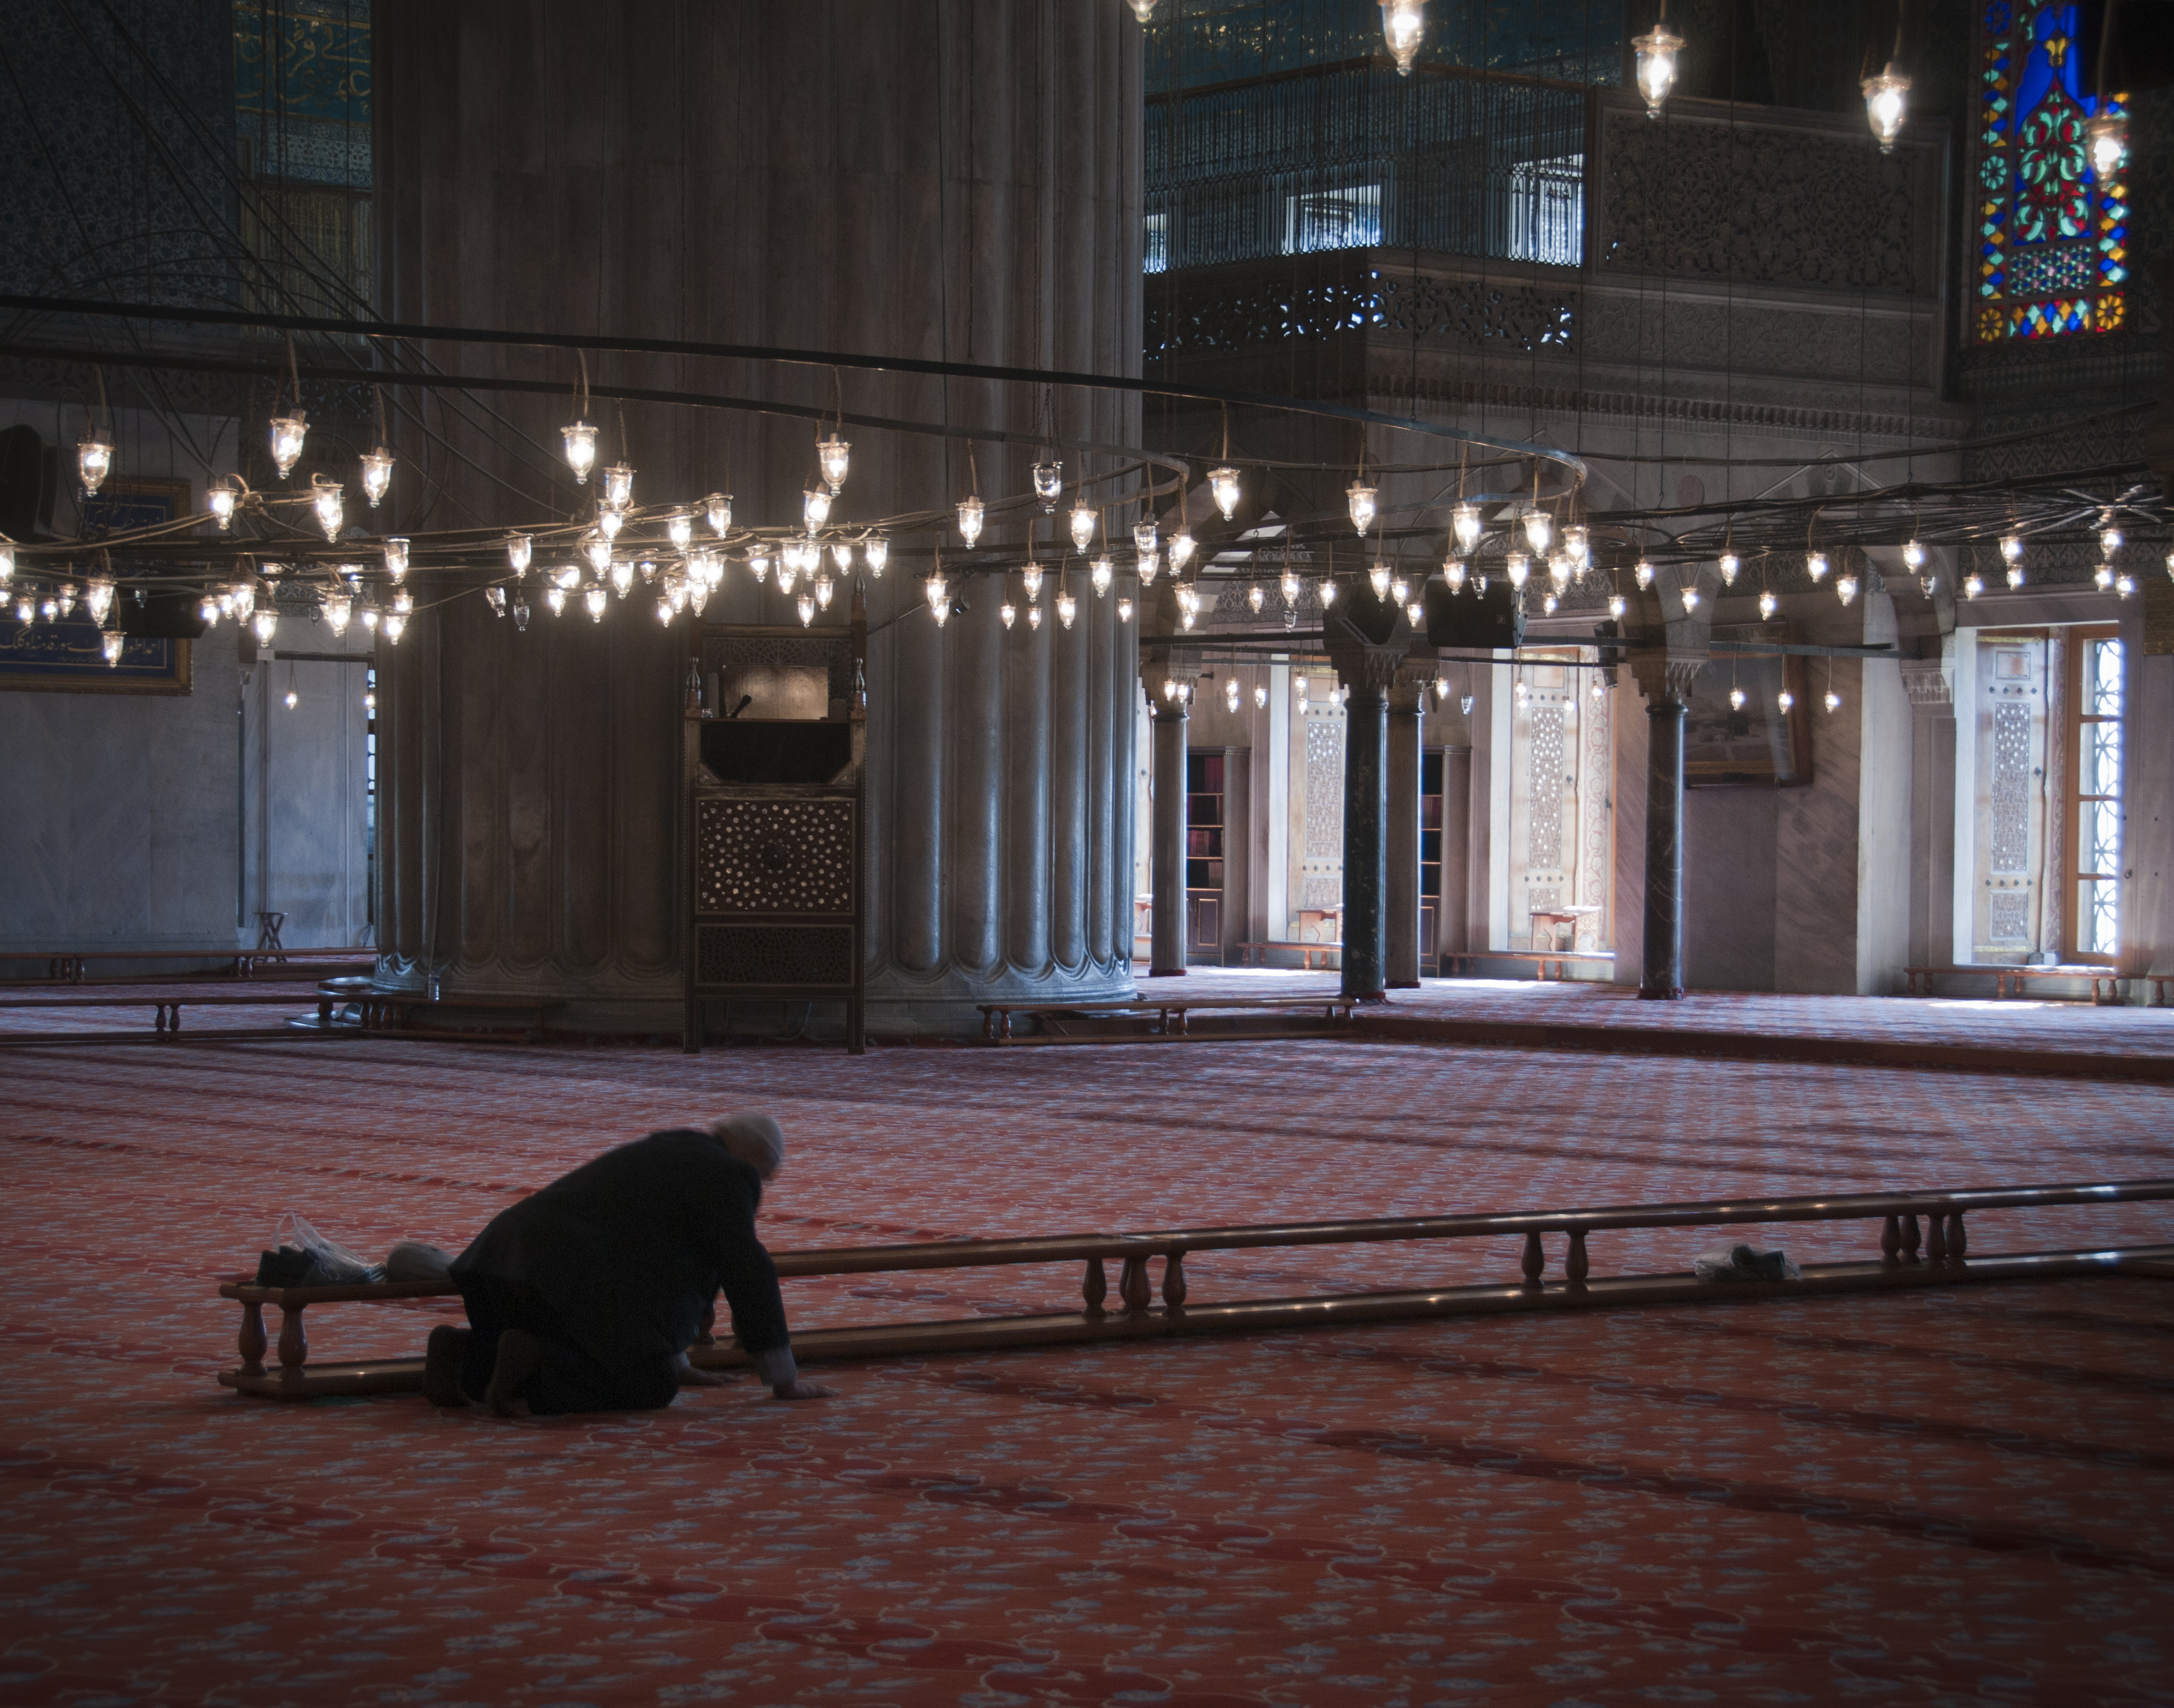 A prayer inside the Mosque